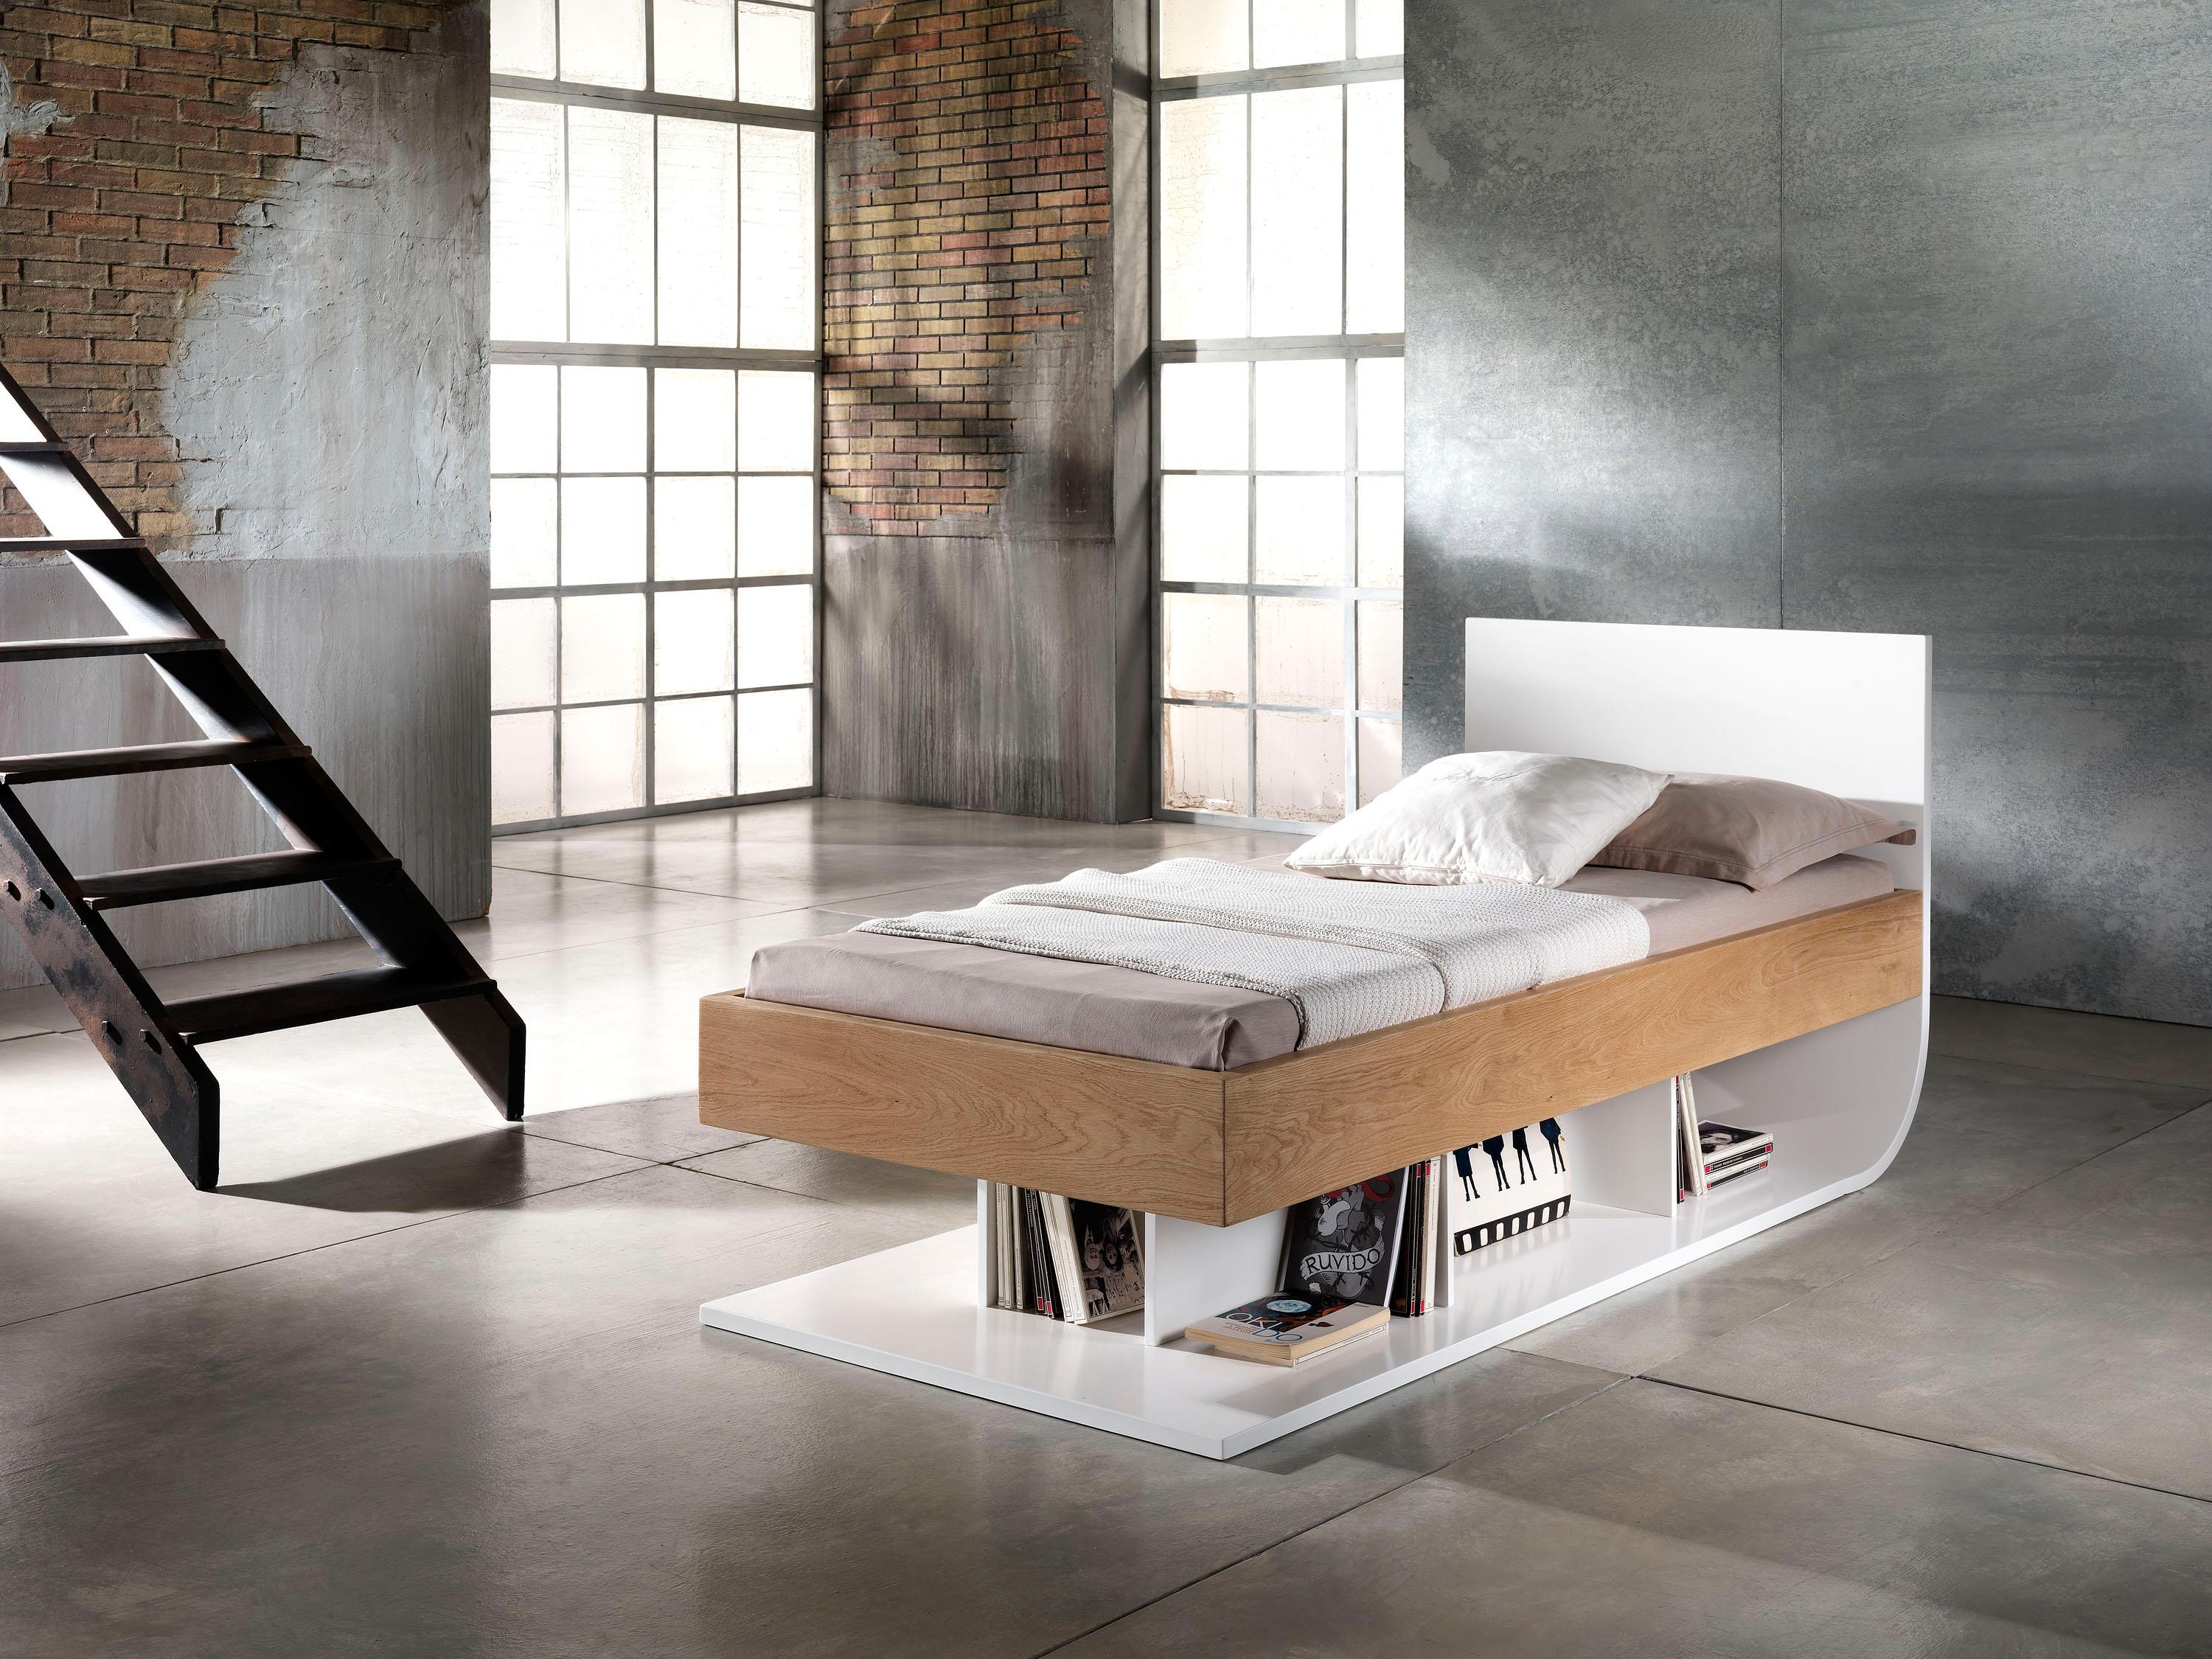 Limbo-Bett von Francesco Profili
Abmessungen: B 110 x T 210 x H 95 cm 
MATERIALIEN: Eiche, deckend lackiertes MDF.

Ein klares und reines Bett mit einer starken Eichenstruktur und Latten, das sich auf natürliche Weise mit einem weichen und zarten